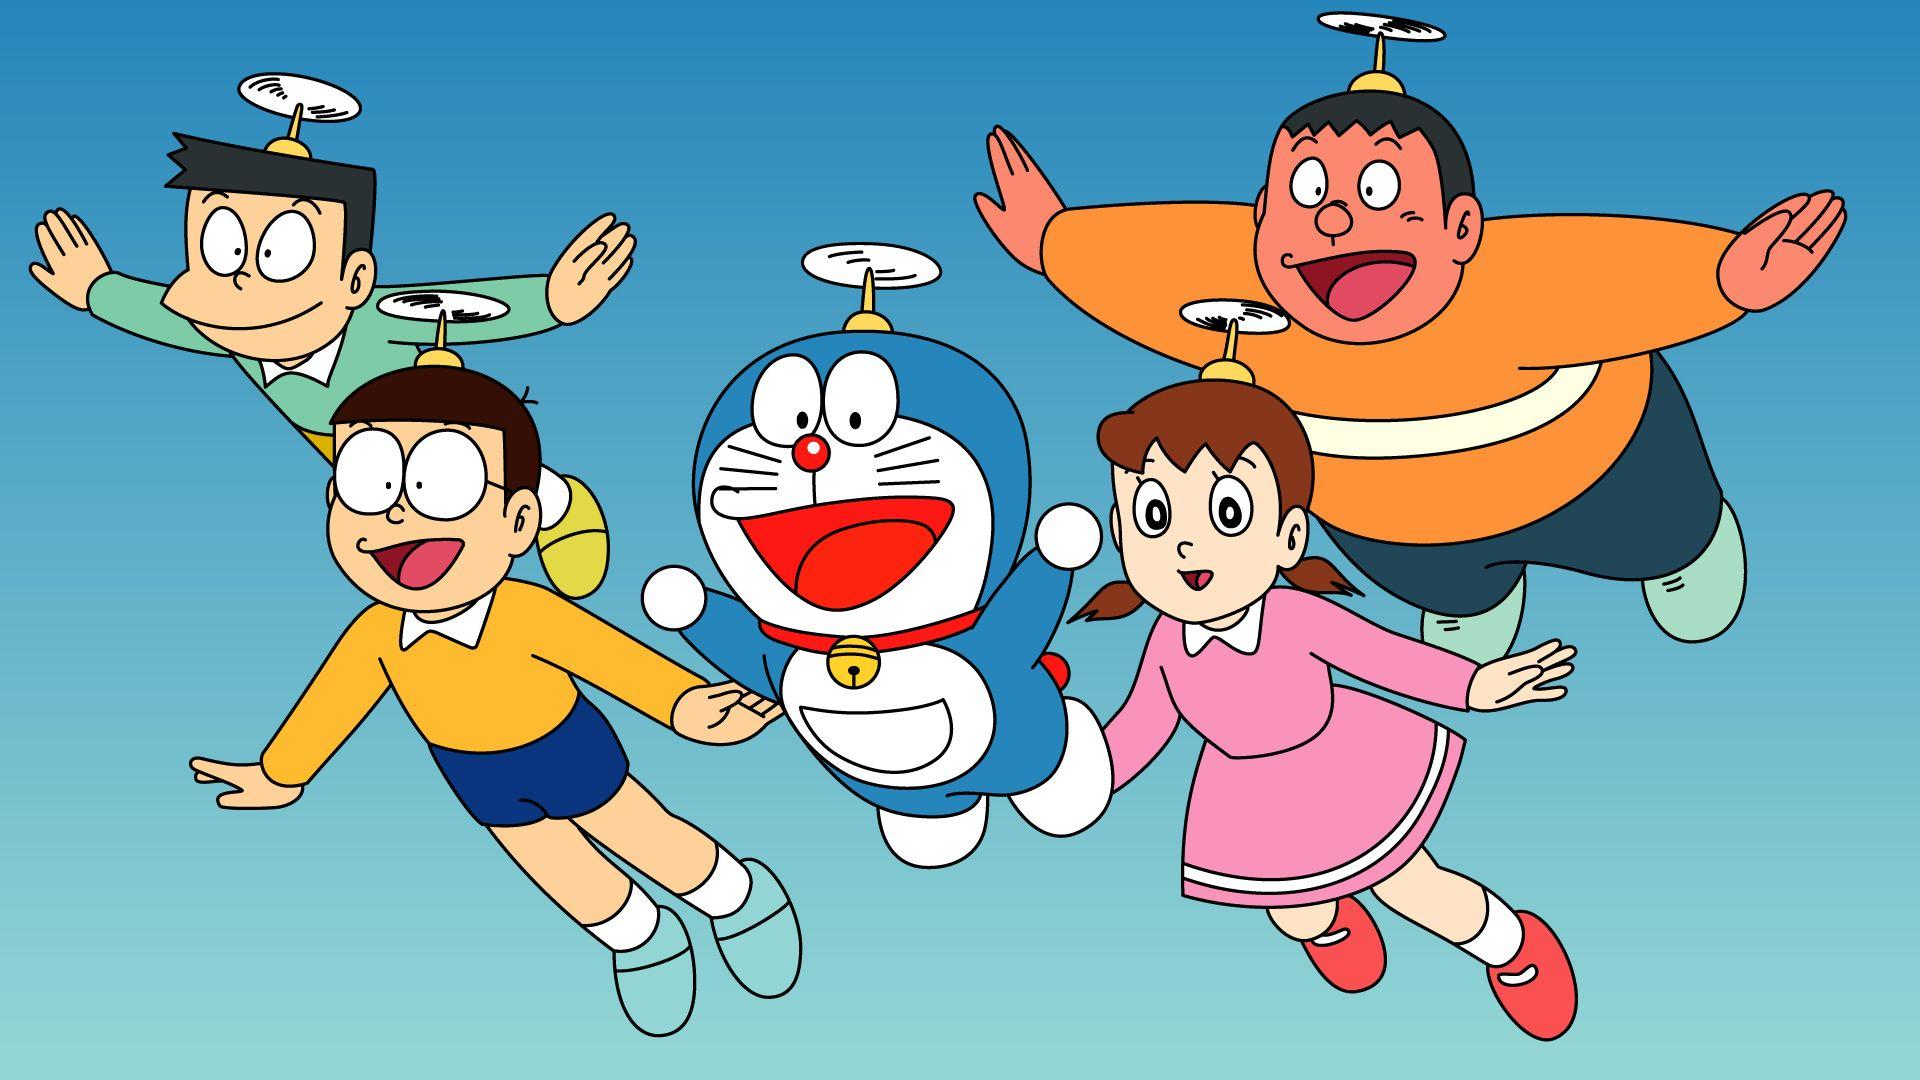 Doraemon PC Wallpapers: Tổng hợp nhiều loại hình nền Doraemon độc đáo và đẹp mắt, chắc chắn sẽ phù hợp với cá tính và sở thích của mỗi người. Hơn thế, được tải về đơn giản và dễ dàng bằng cách truy cập vào trang web của chúng tôi. Tạo cho máy tính của bạn một phong cách độc đáo và thơm vị của chú mèo máy Doraemon.